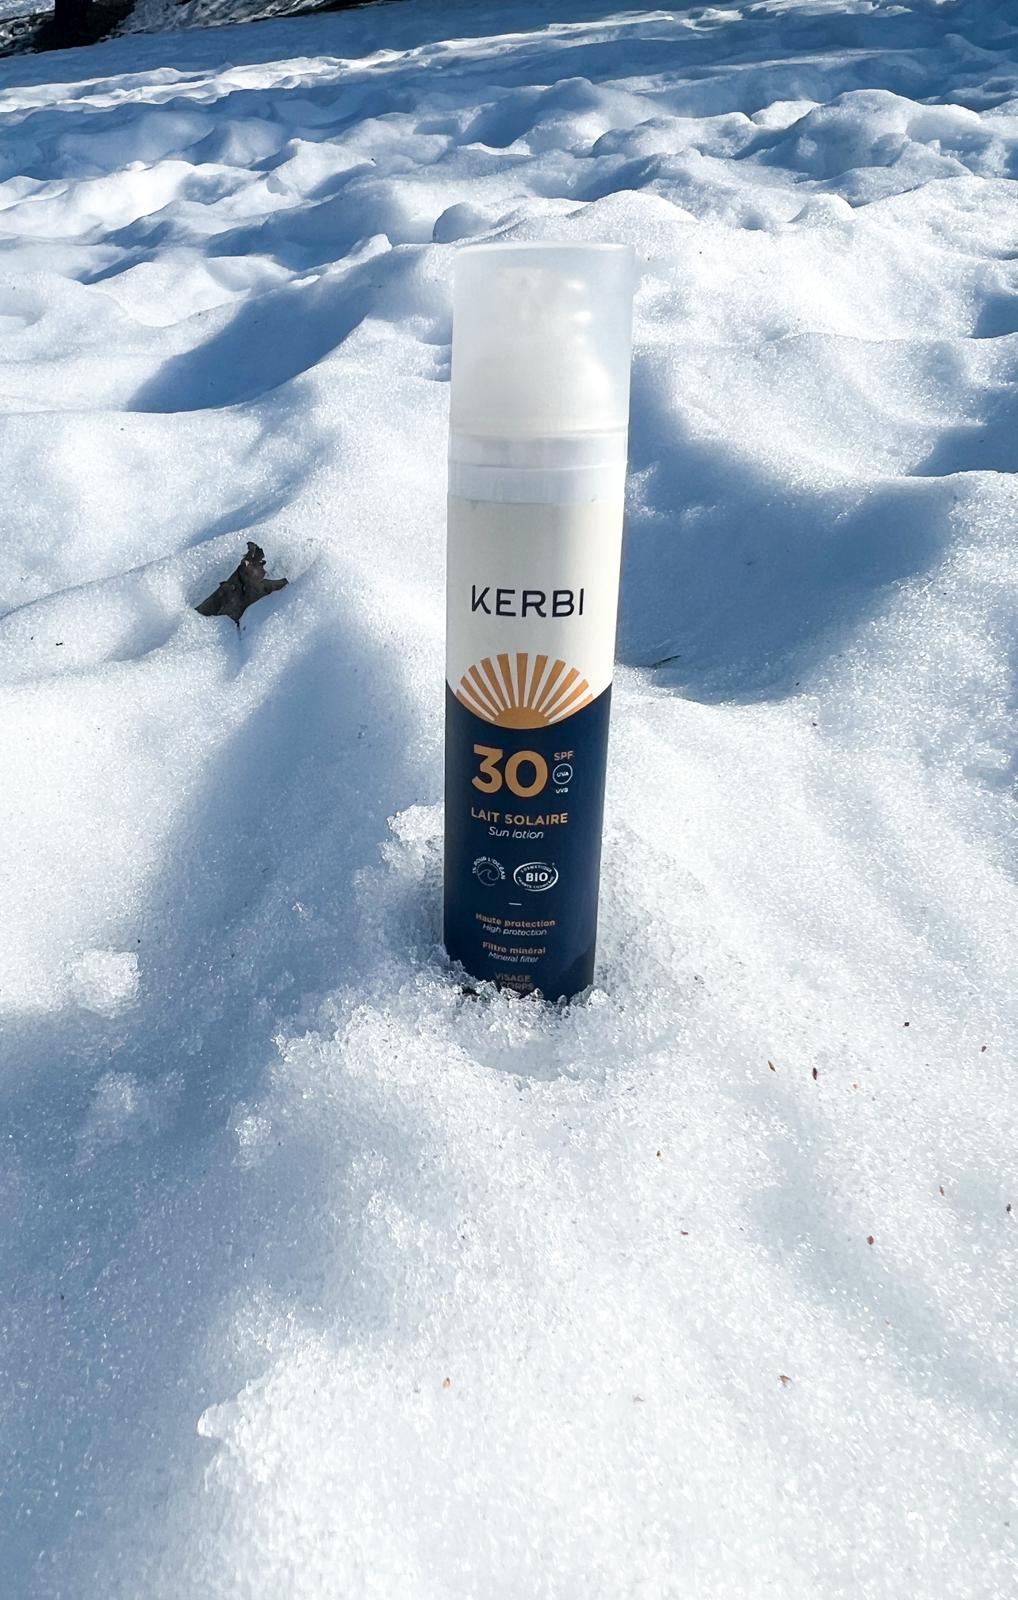 L'Importance cruciale de protéger sa peau du soleil en hiver : les conseils de Kerbi